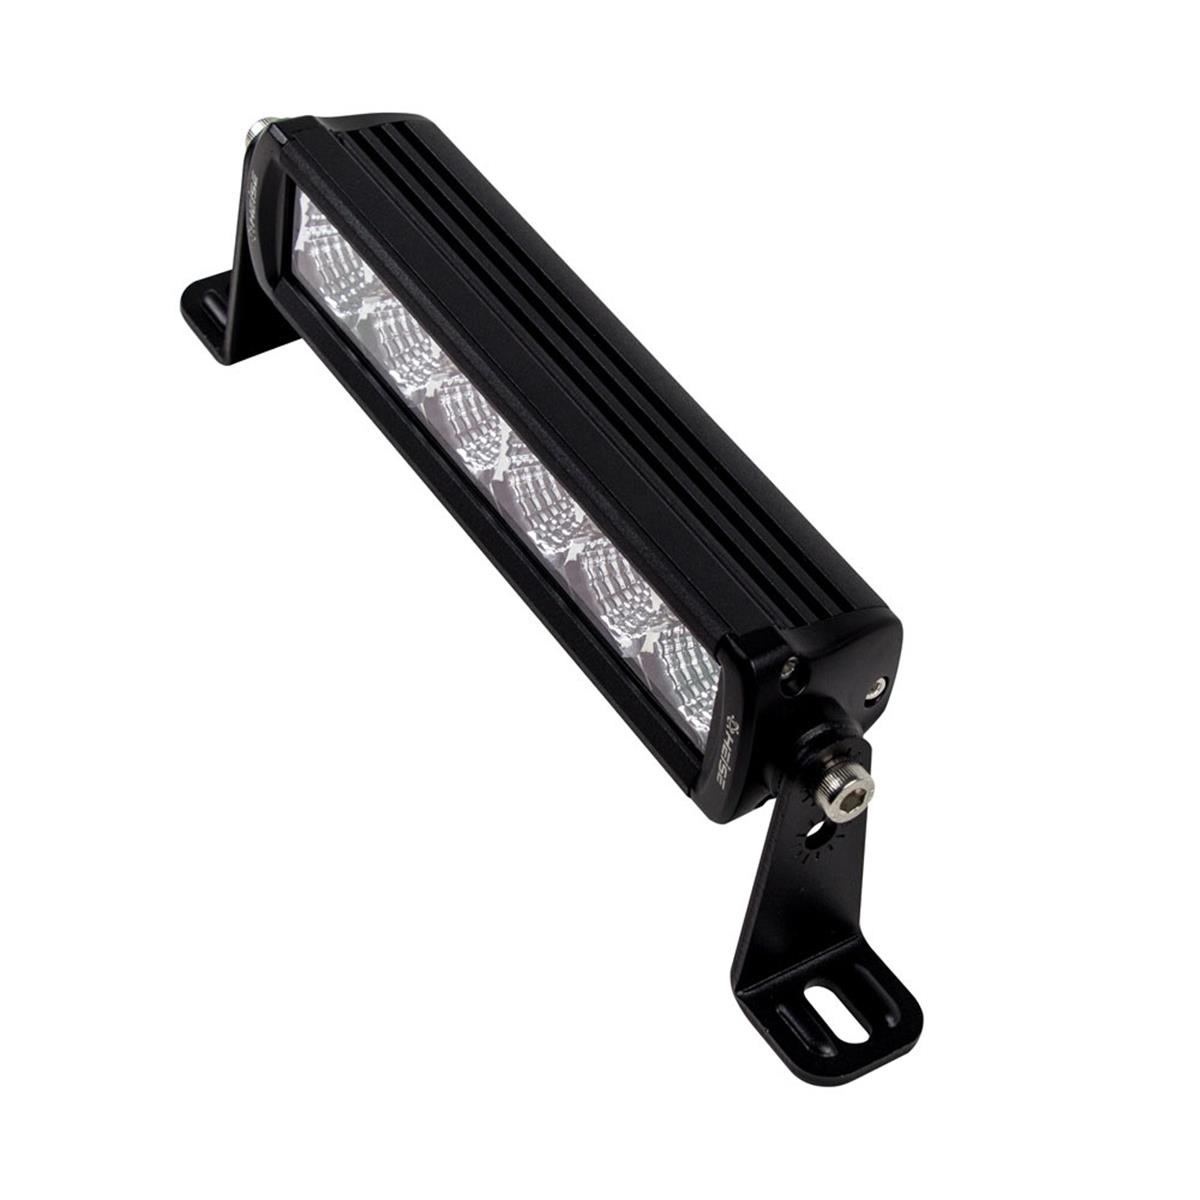 HE-SL914 9.25 in. Single Row Slimline LED Light Bar -  HEISE LED Lighting Systems